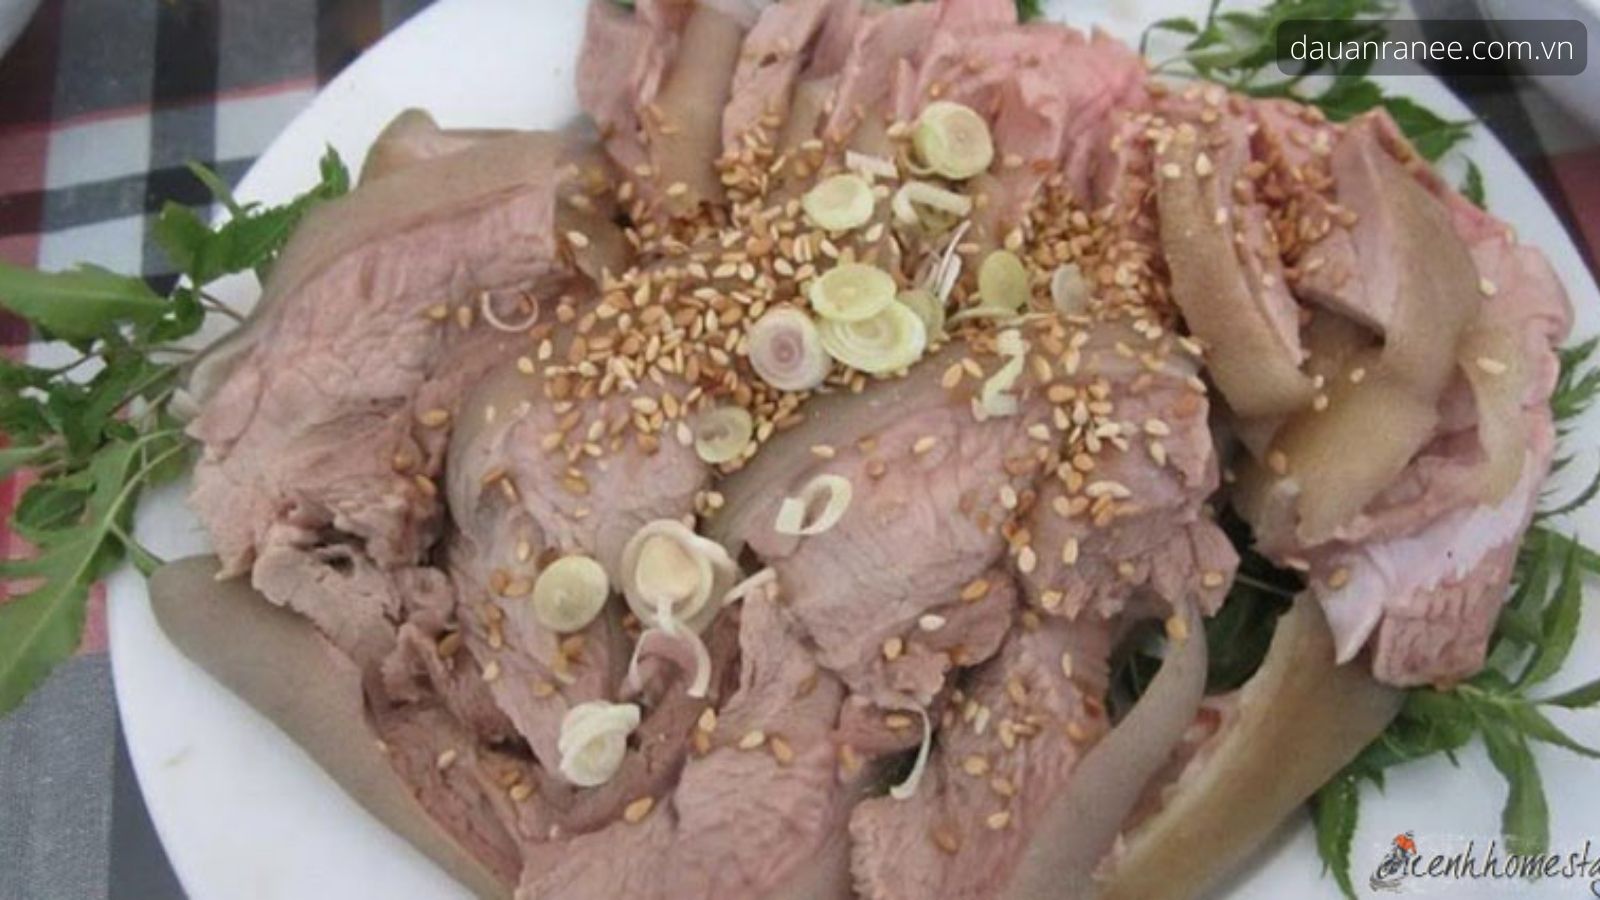 Đặc sản Hà Nam – Thịt dê núi làm quà khi du lịch đến Hà Nam